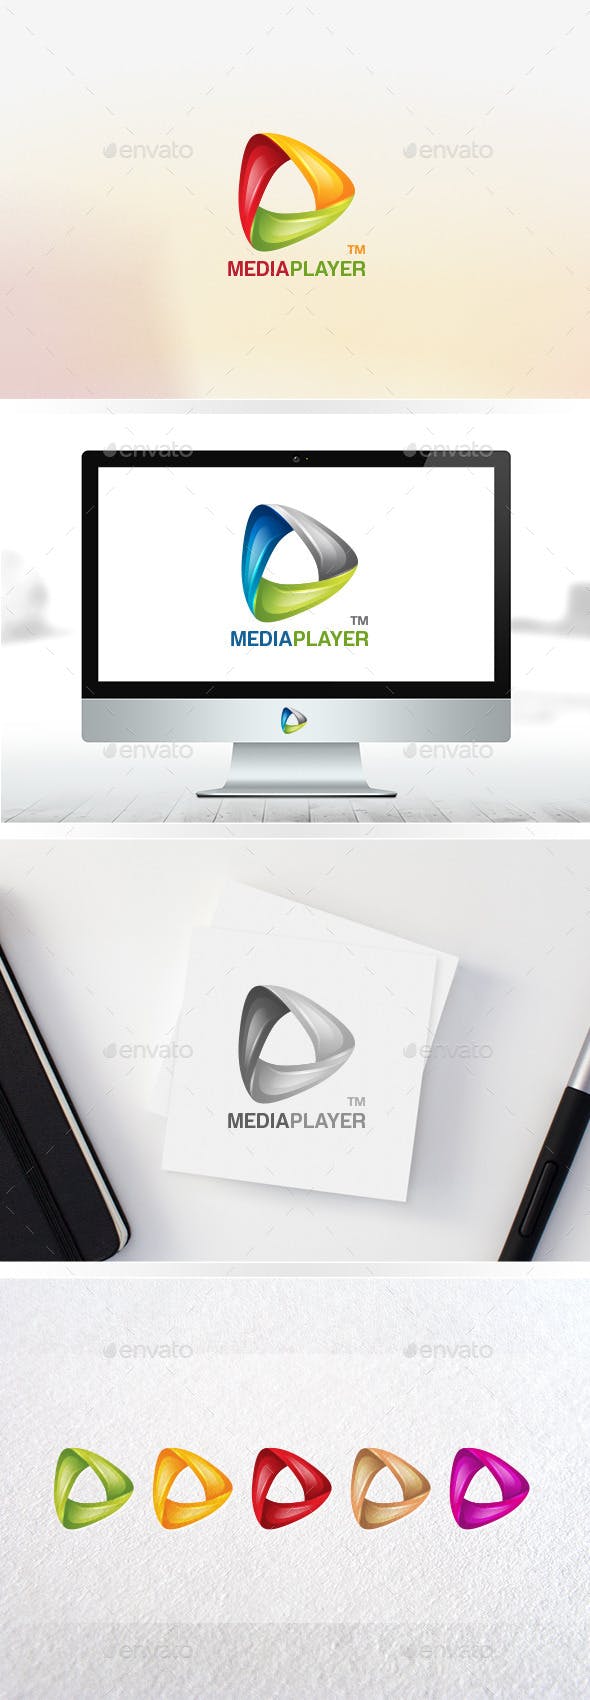 Triangle Movie Logo - Media Play / Triangle Logo / Player / Cinema / Movie / 3D Logo ...